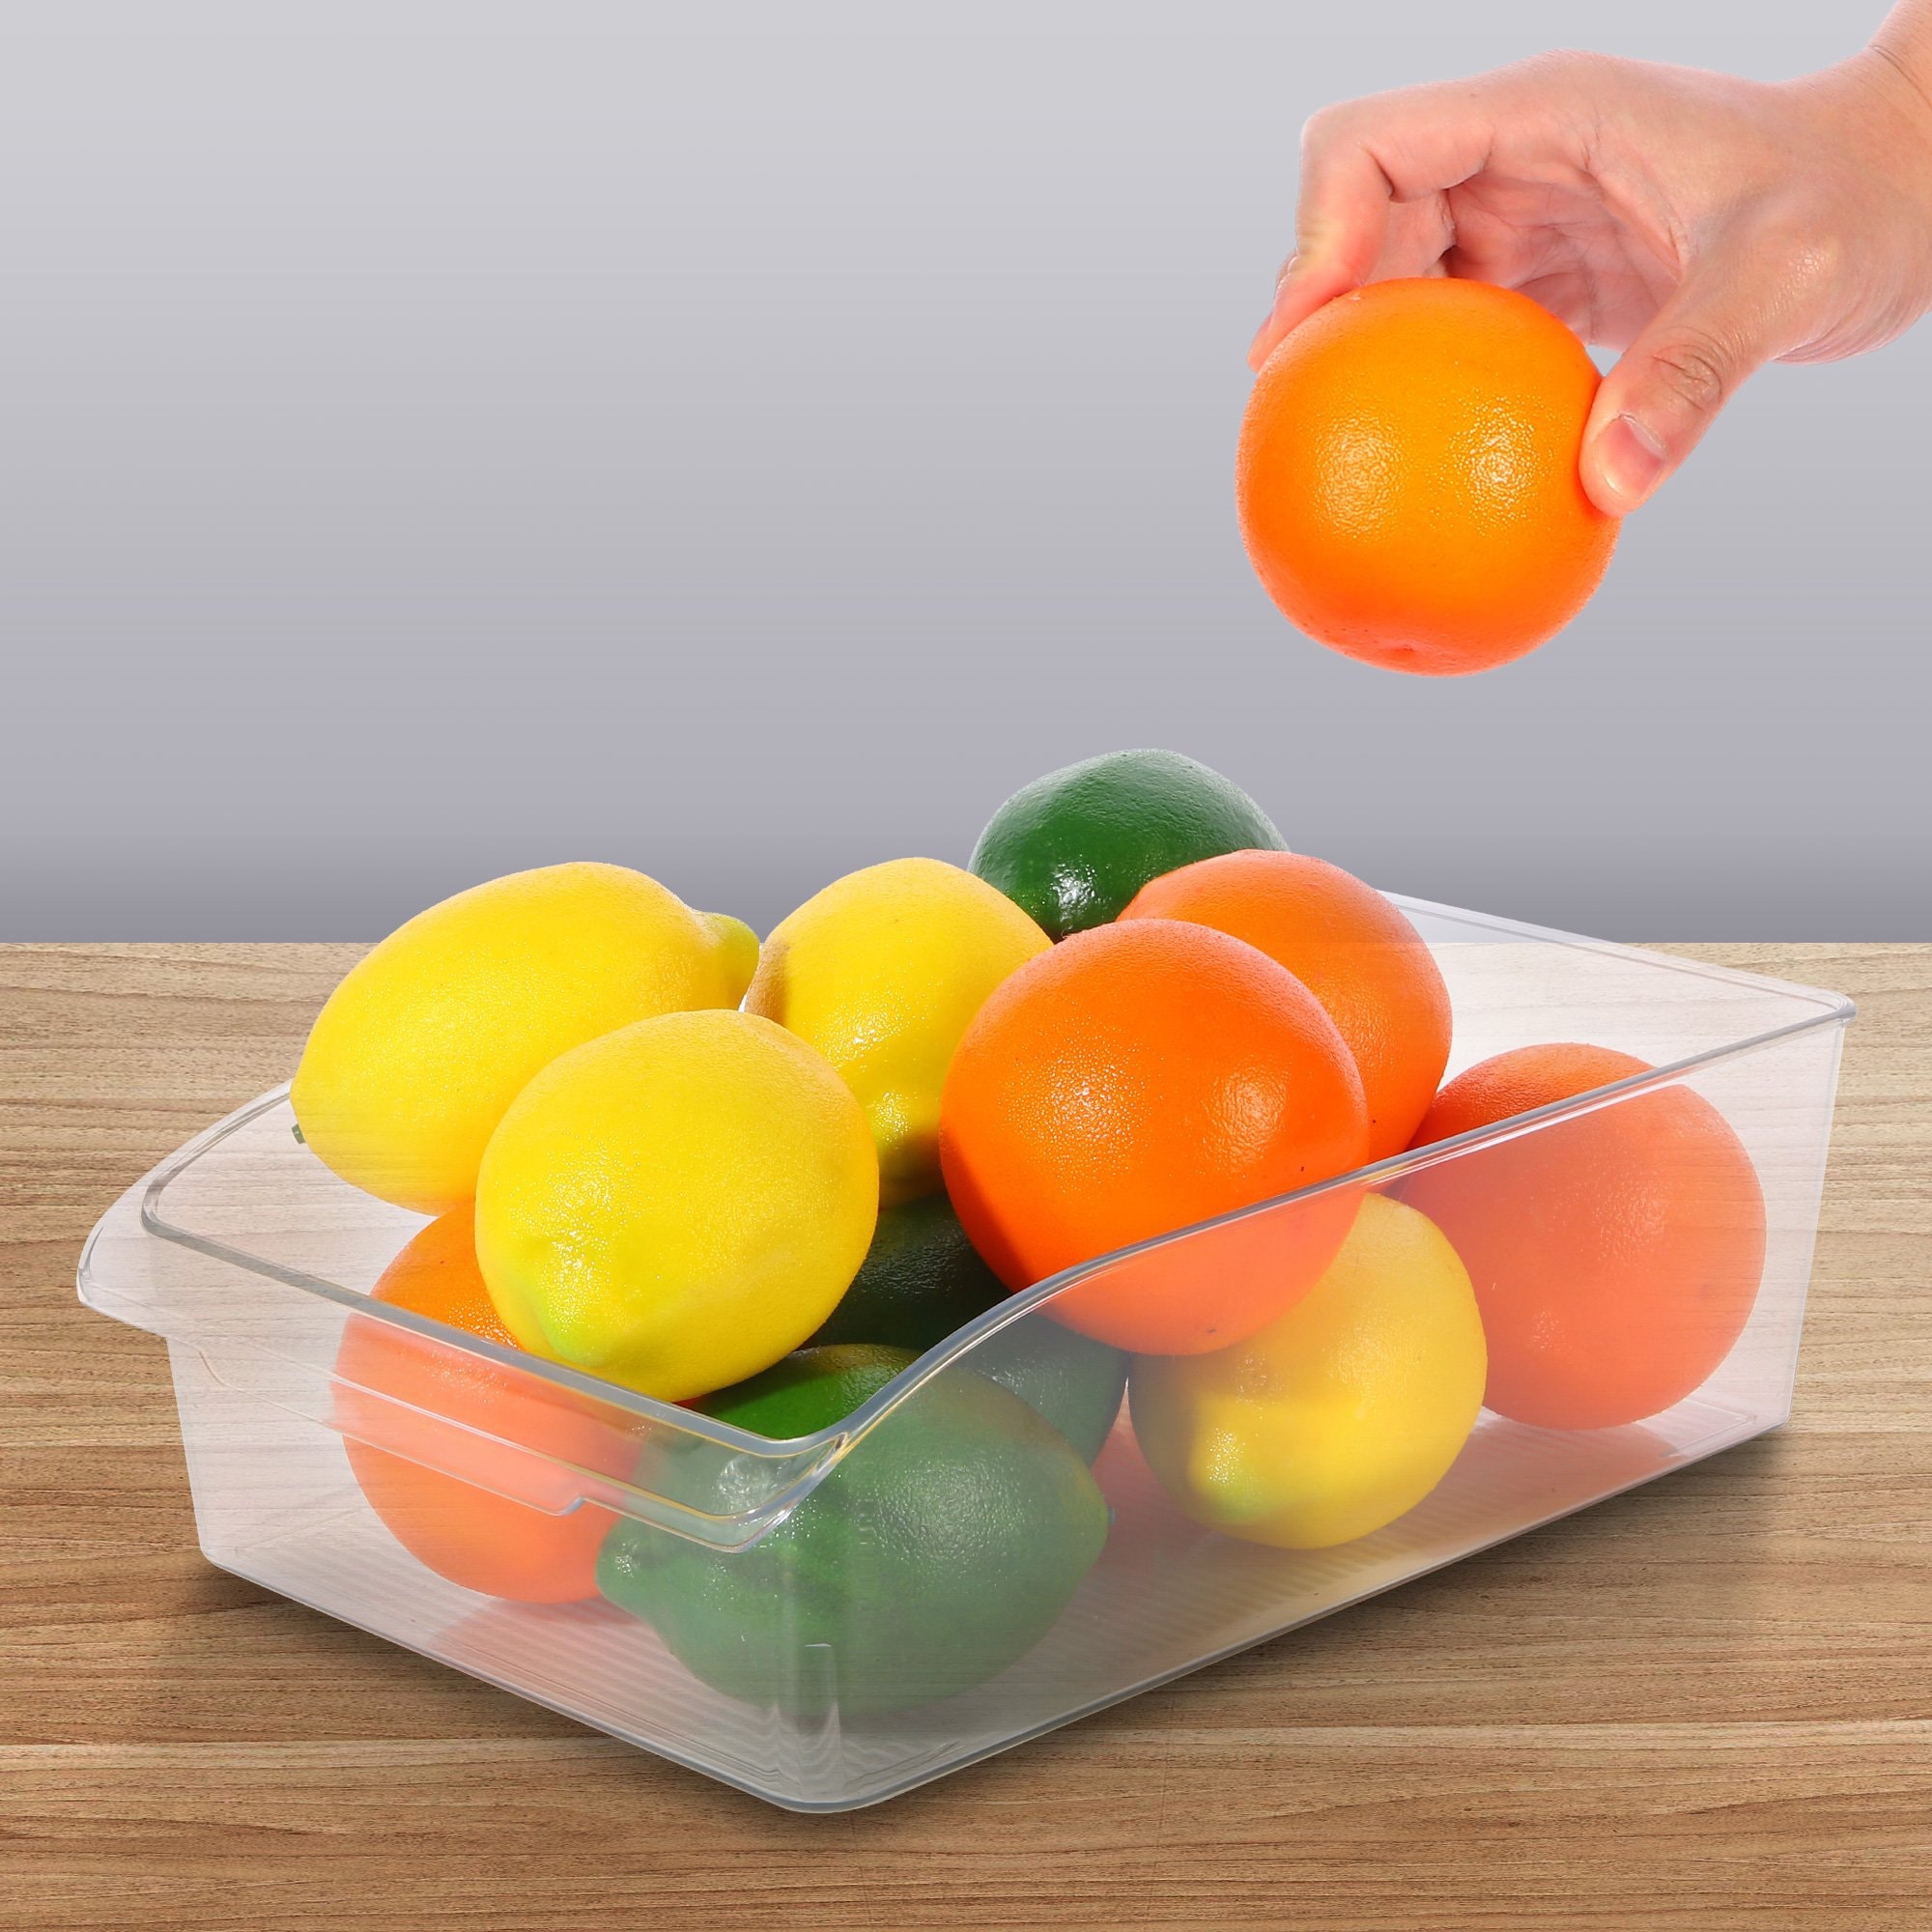 ROSELIFE 飲品蔬果分類廚房冰箱收納盒 12.2"x8.0"x3.6"